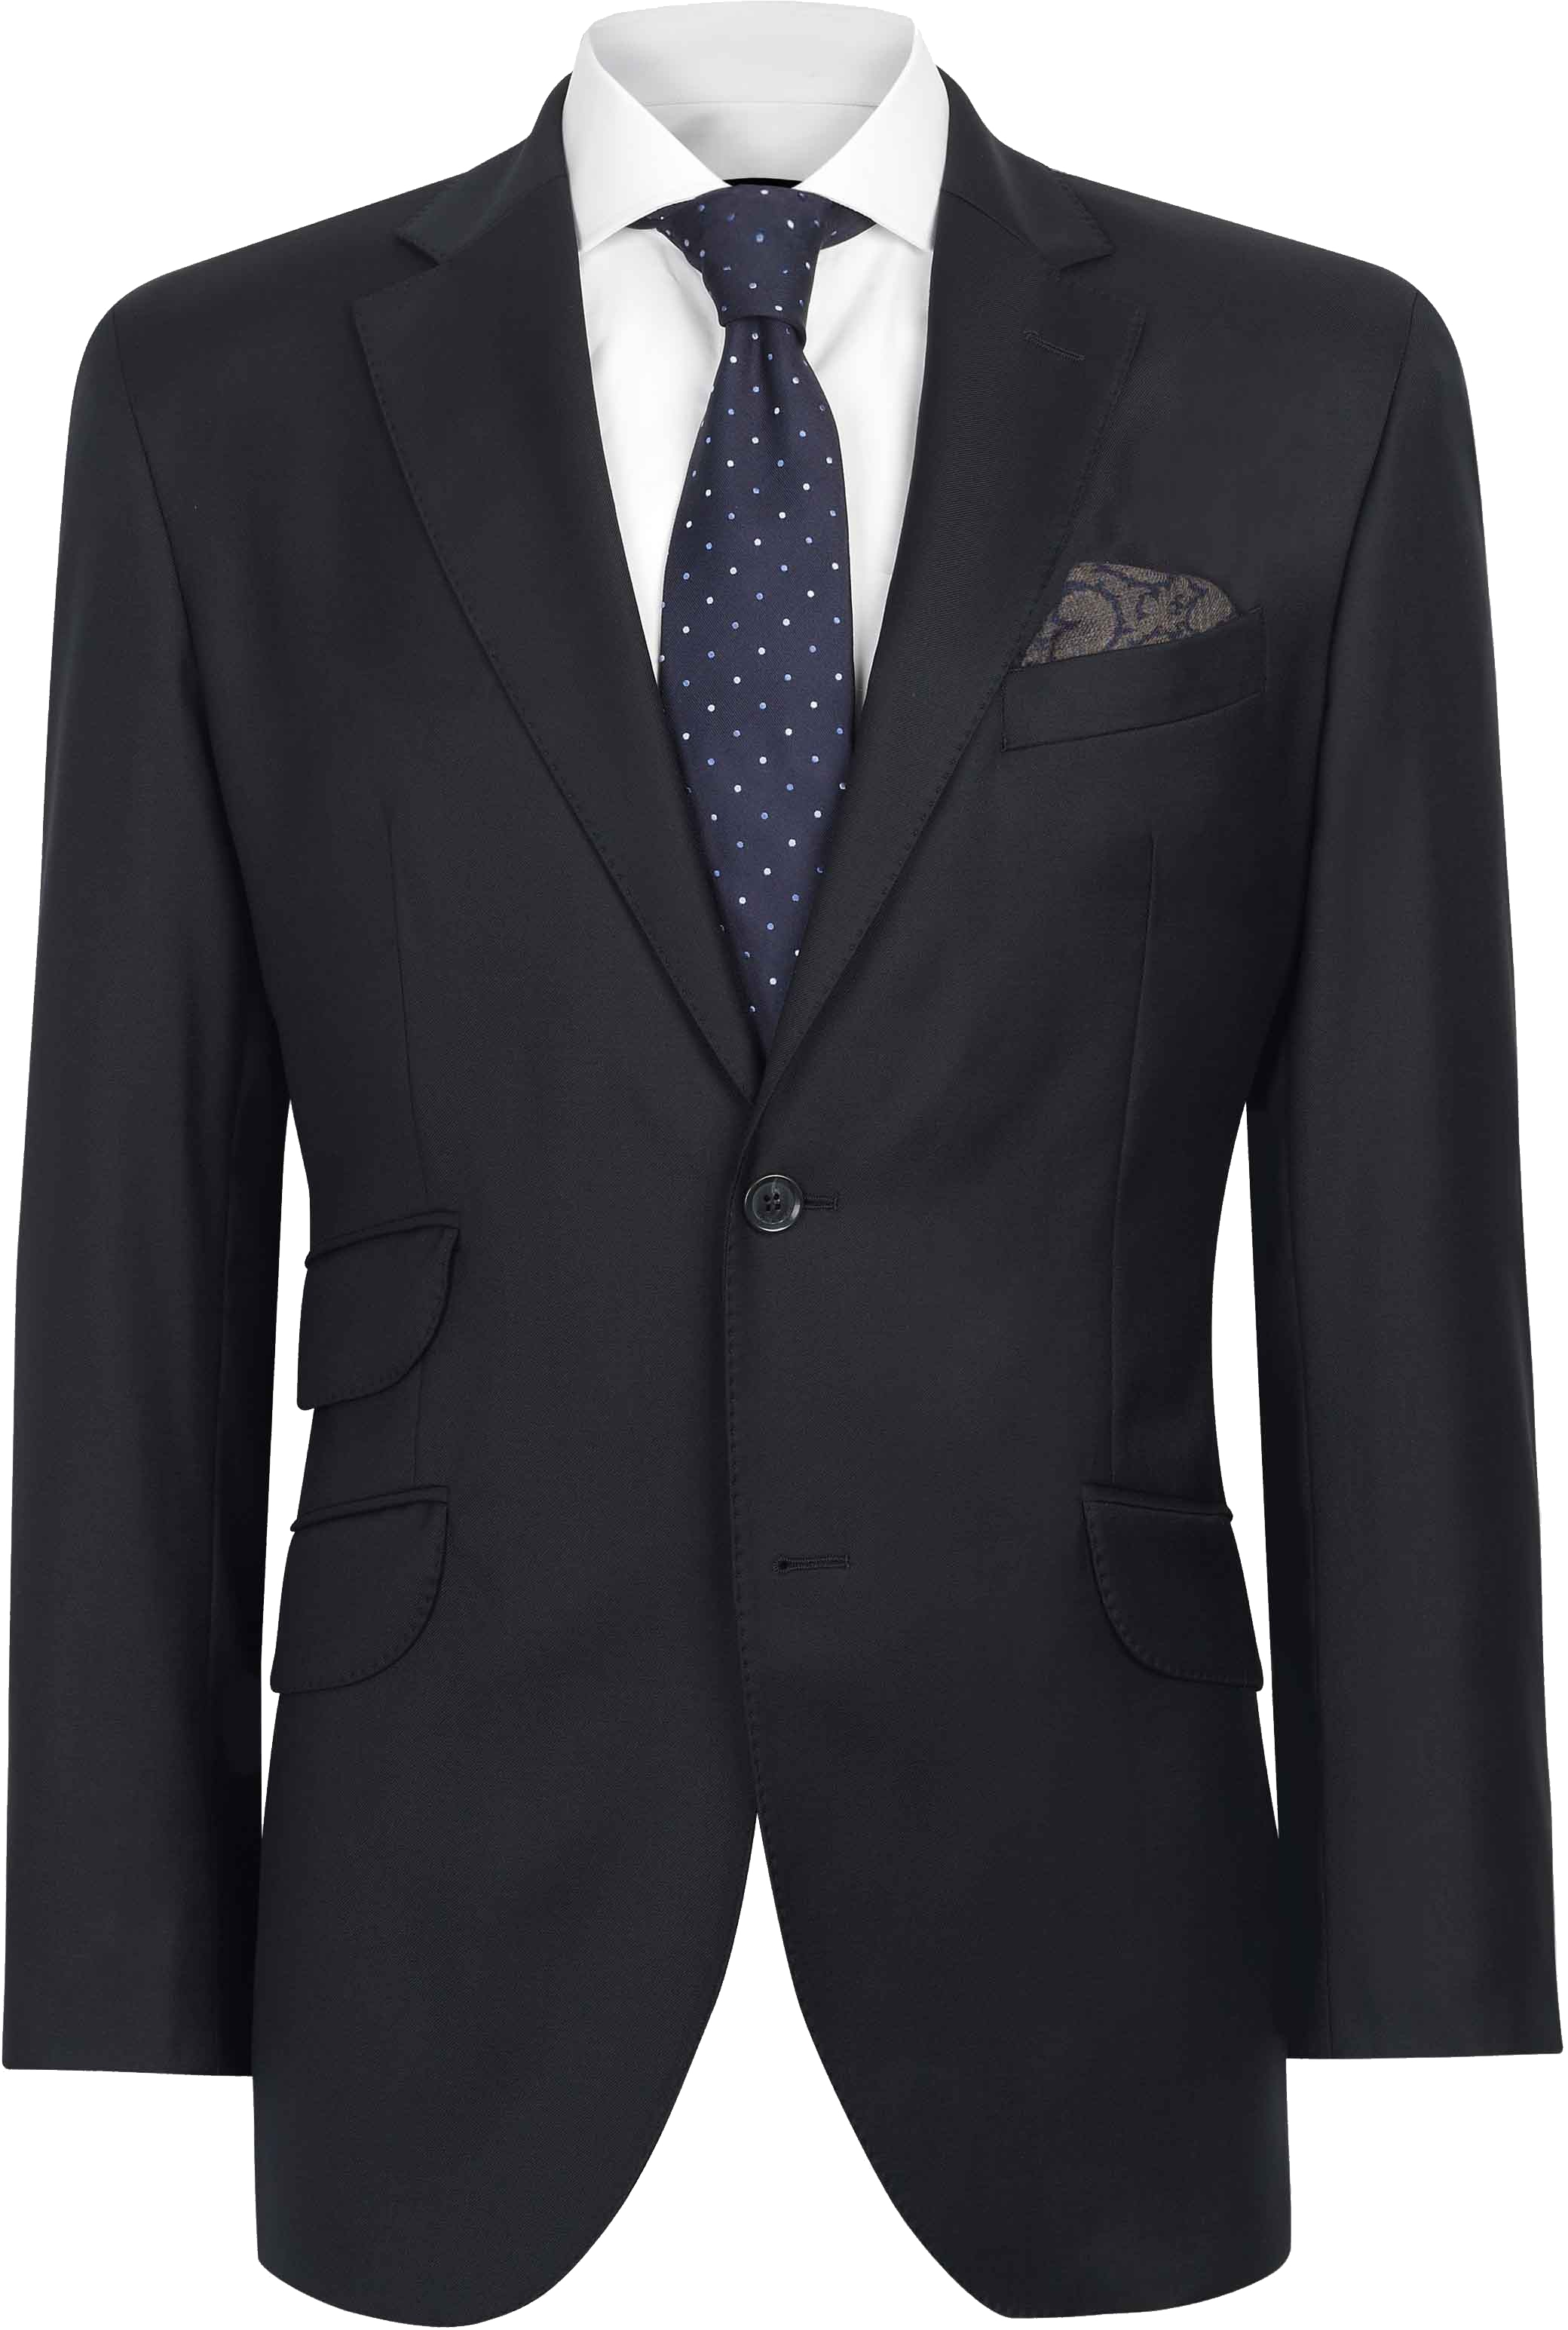 Suit PNG Transparent Image